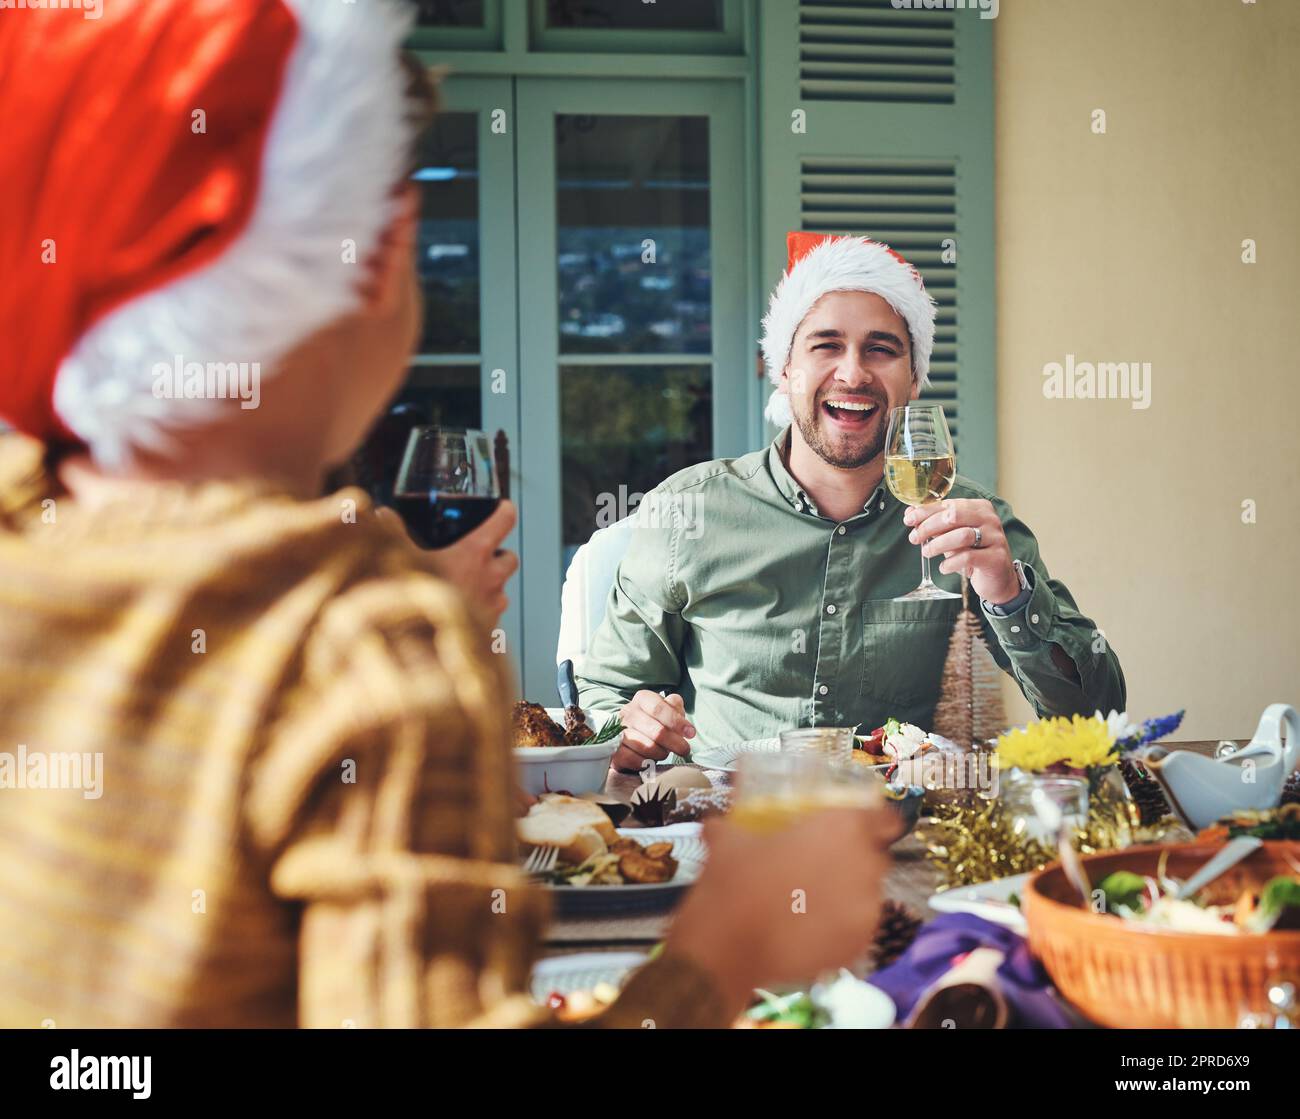 Hes fühlt sich heute sehr fröhlich. Porträt eines hübschen jungen Mannes, der sich mit Freunden und Familie auf einer Weihnachtsessen-Party vergnügt. Stockfoto